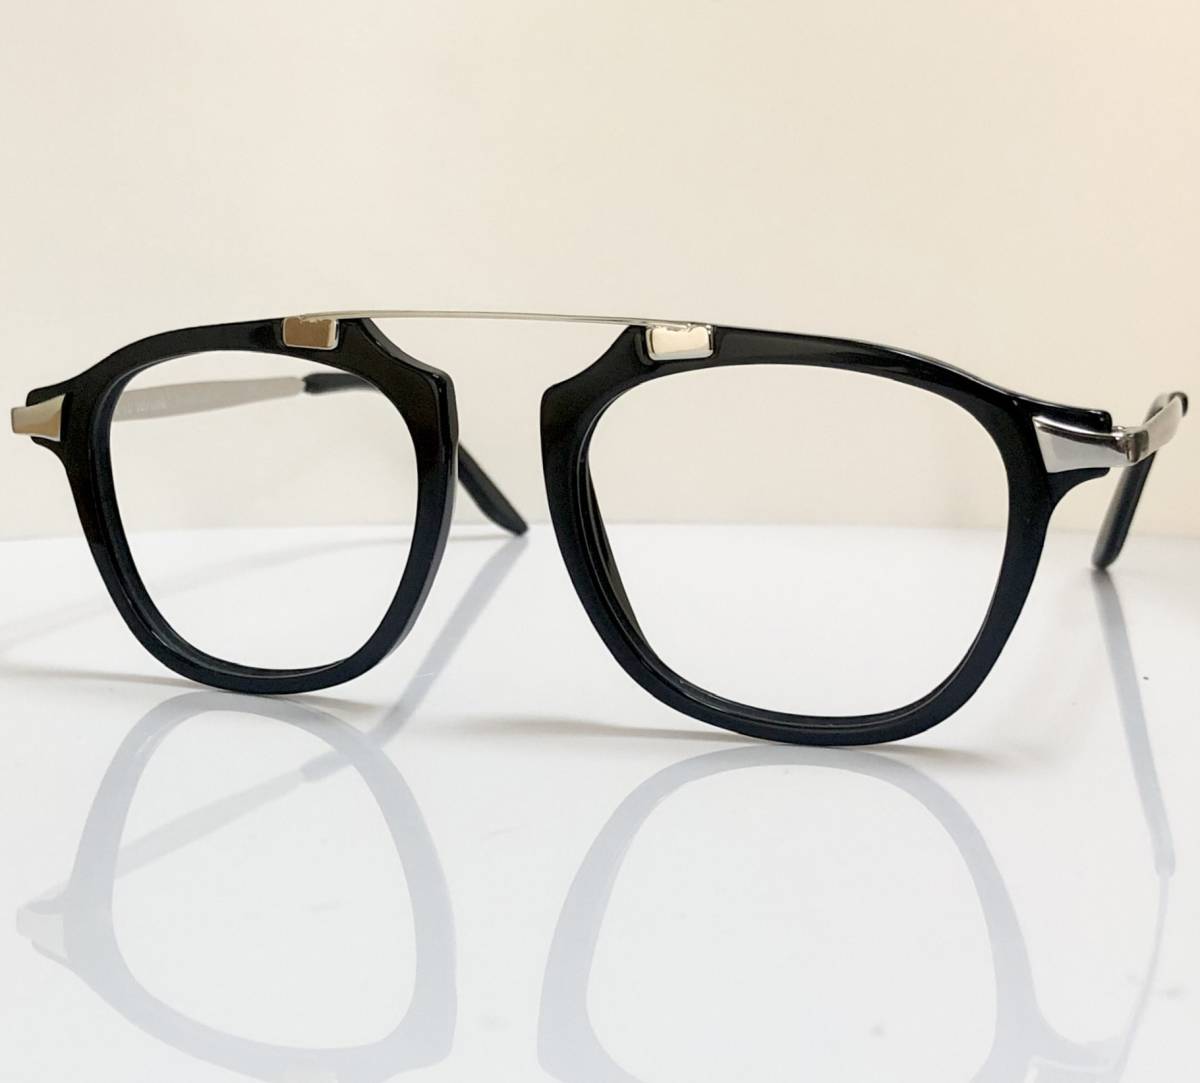 処分価格 定価 46,500円 イタリア製メガネ 新品 黒 シルバー ストレートブリッジ _画像3